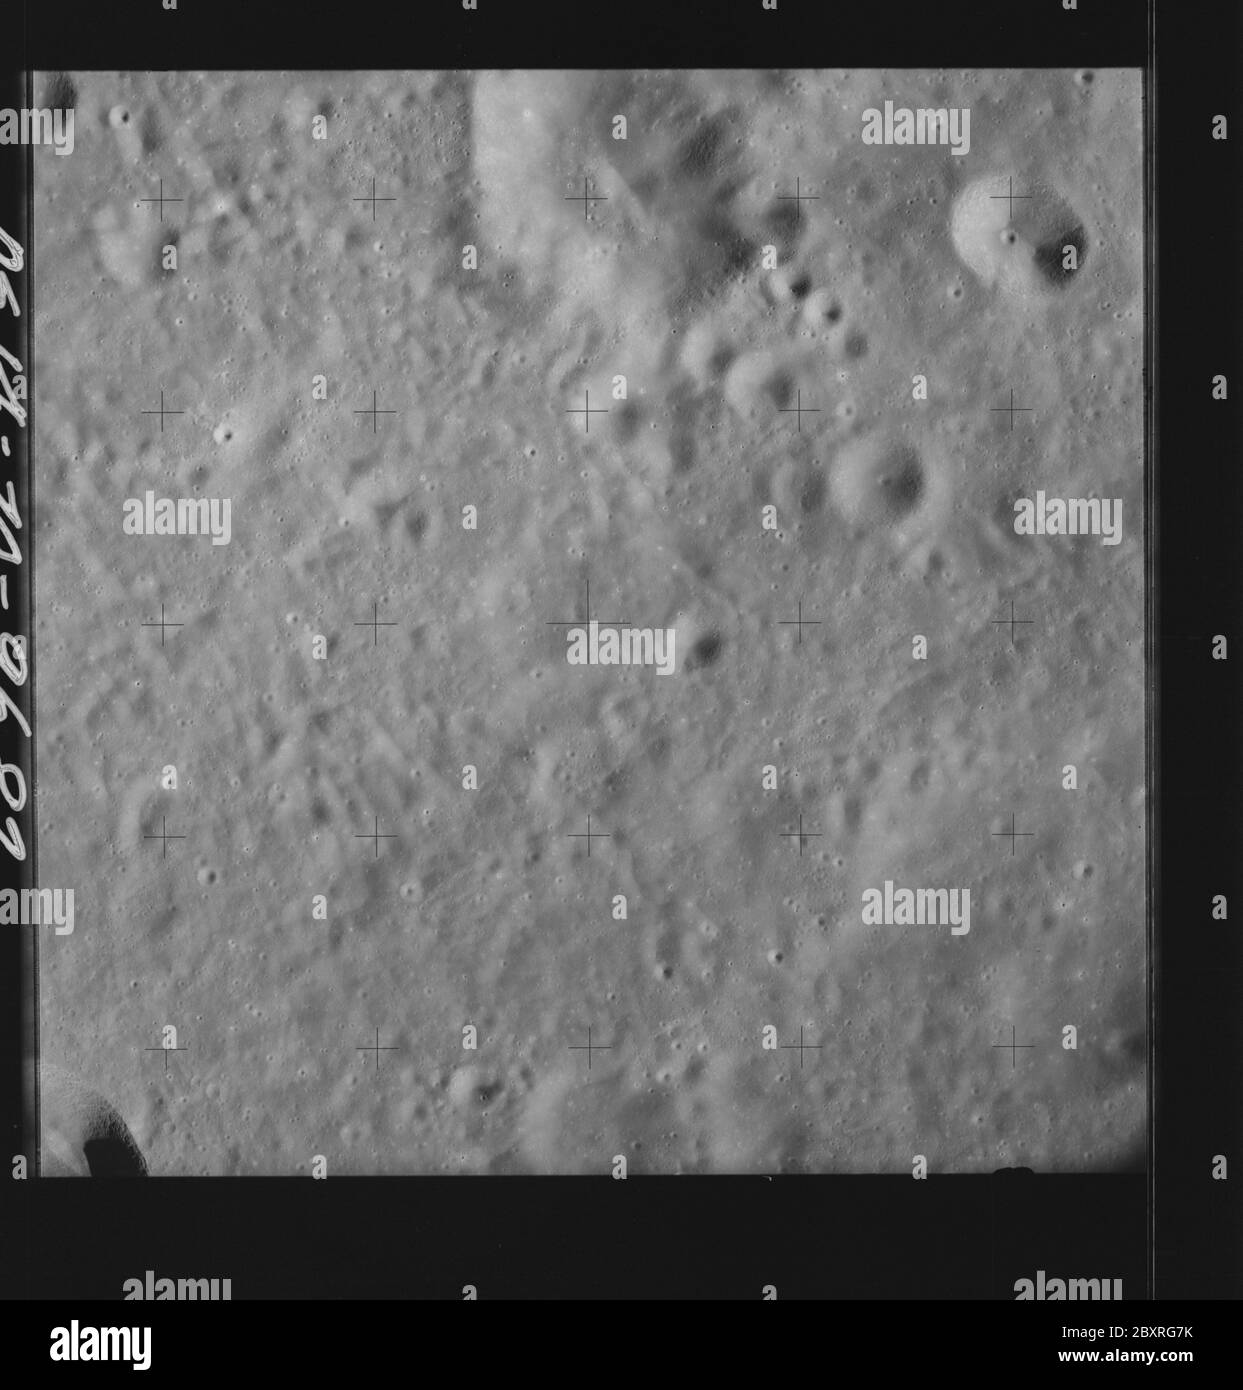 AS14-70-9682 - Apollo 14 - immagine della missione Apollo 14 - Vista della superficie lunare a sud del cratere del Vesalius e a nord del cratere del Meitner; portata e contenuto: Il database originale descrive questo come: Descrizione: Vista della superficie lunare a sud del cratere Vesalius e a nord del cratere Meitner. Sono state scattate immagini sulla Rivoluzione 26 della missione Apollo 14. Il caricatore di pellicola originale era etichettato Q, il tipo di pellicola era 3400BW (Panatomic-X, Nero e Bianco), lente da 80 mm con un'elevazione del sole di 28 gradi. La scala approssimativa della foto è 1:1,380,000. La latitudine del punto principale era 7.5S per Longitudine 113.0E, con Foto Stock